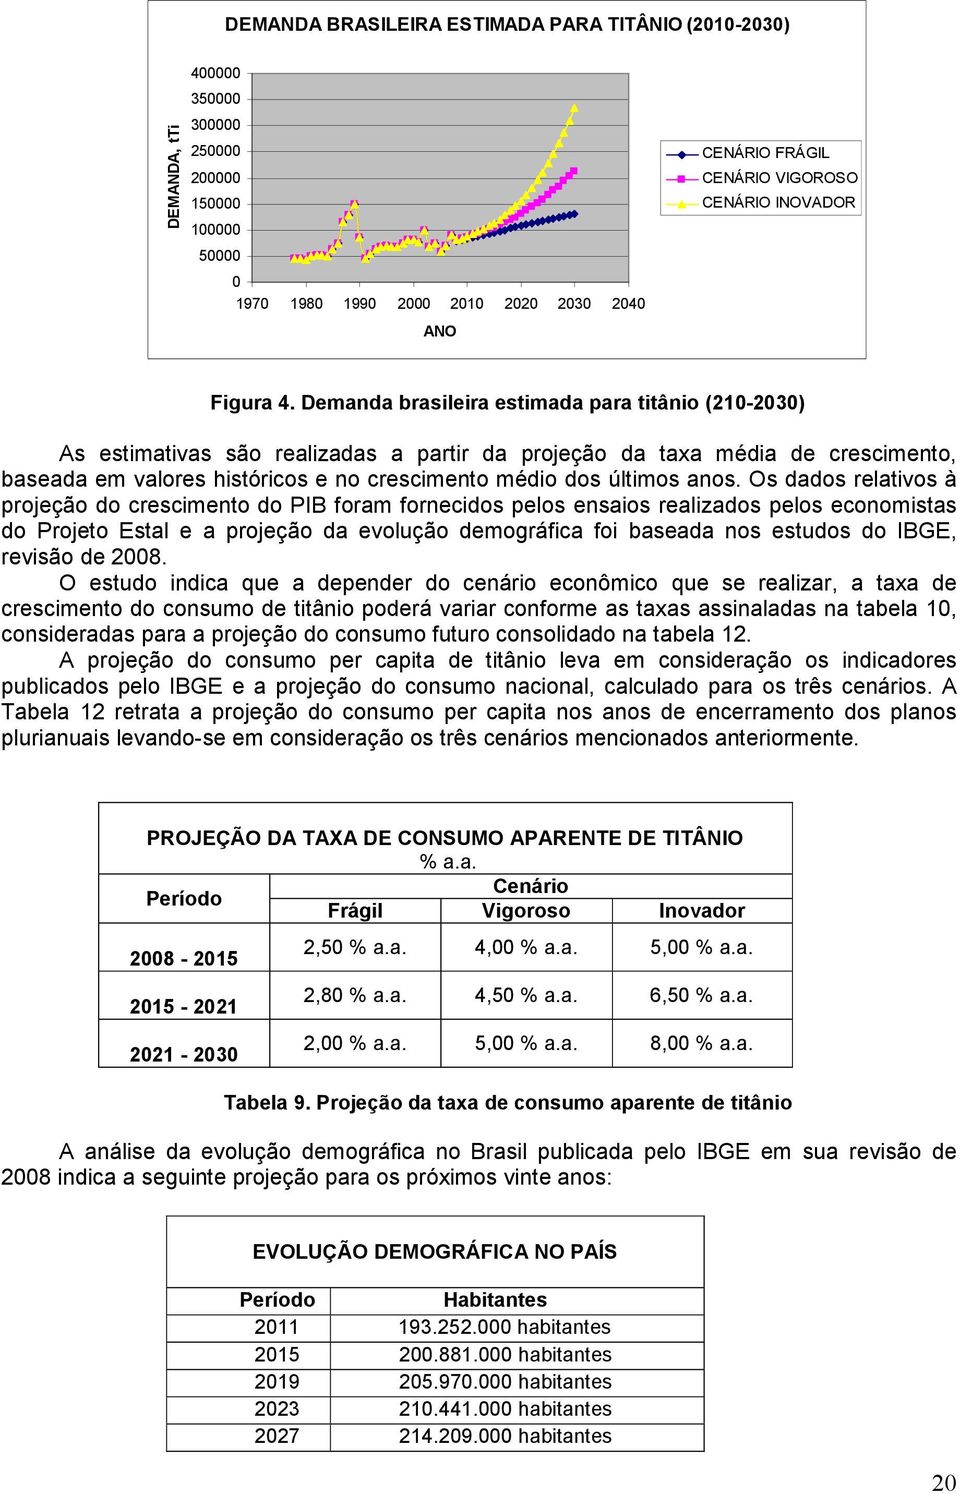 Demanda brasileira estimada para titânio (210-2030) As estimativas são realizadas a partir da projeção da taxa média de crescimento, baseada em valores históricos e no crescimento médio dos últimos